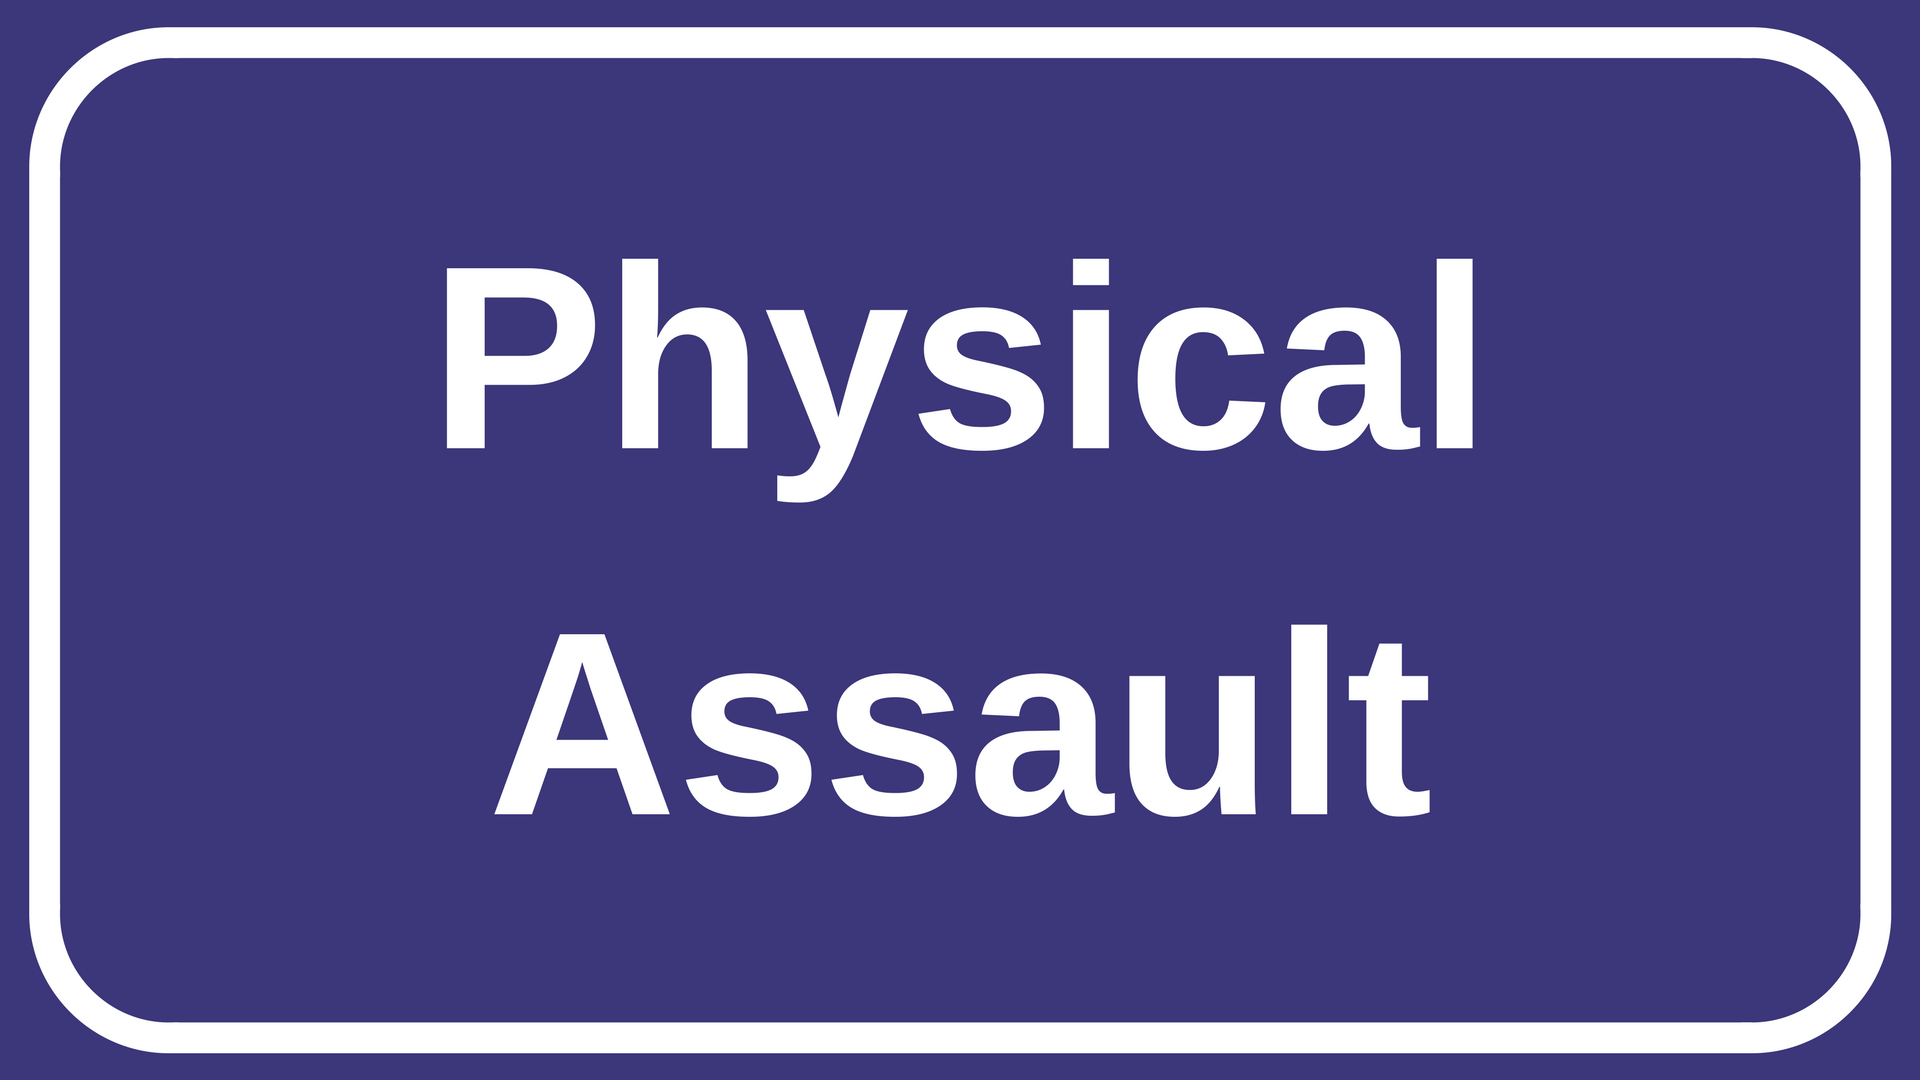 Physical assault text banner